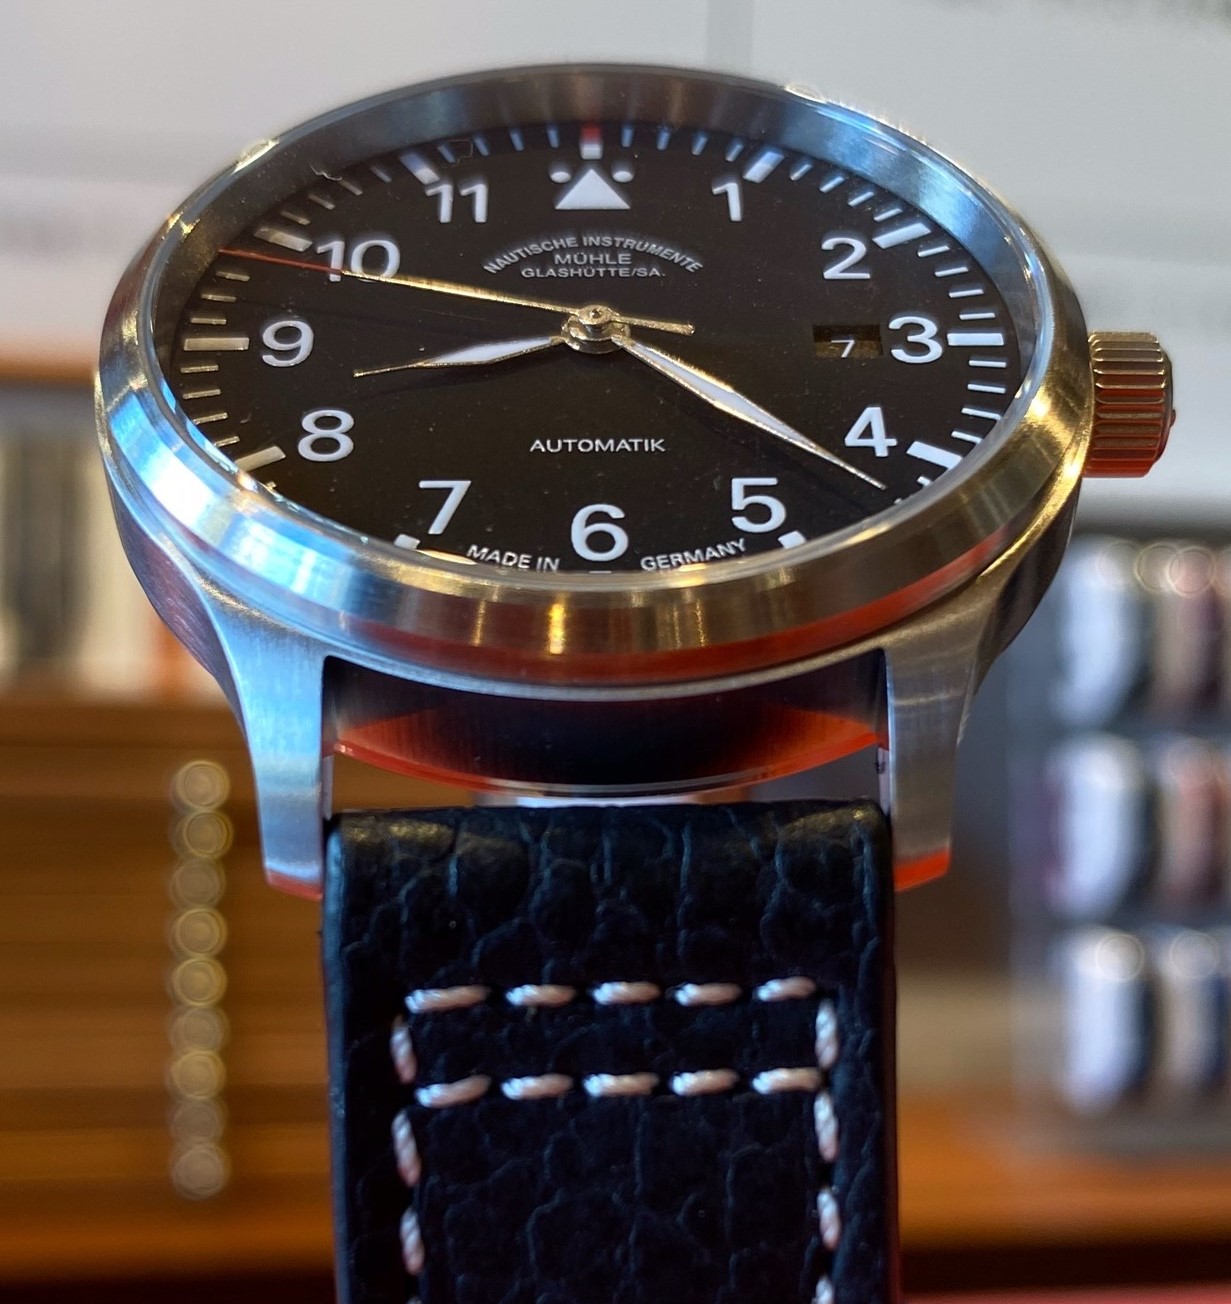 ミューレ グラスヒュッテ(Muhle Glashutte) | ブランド腕時計の正規 